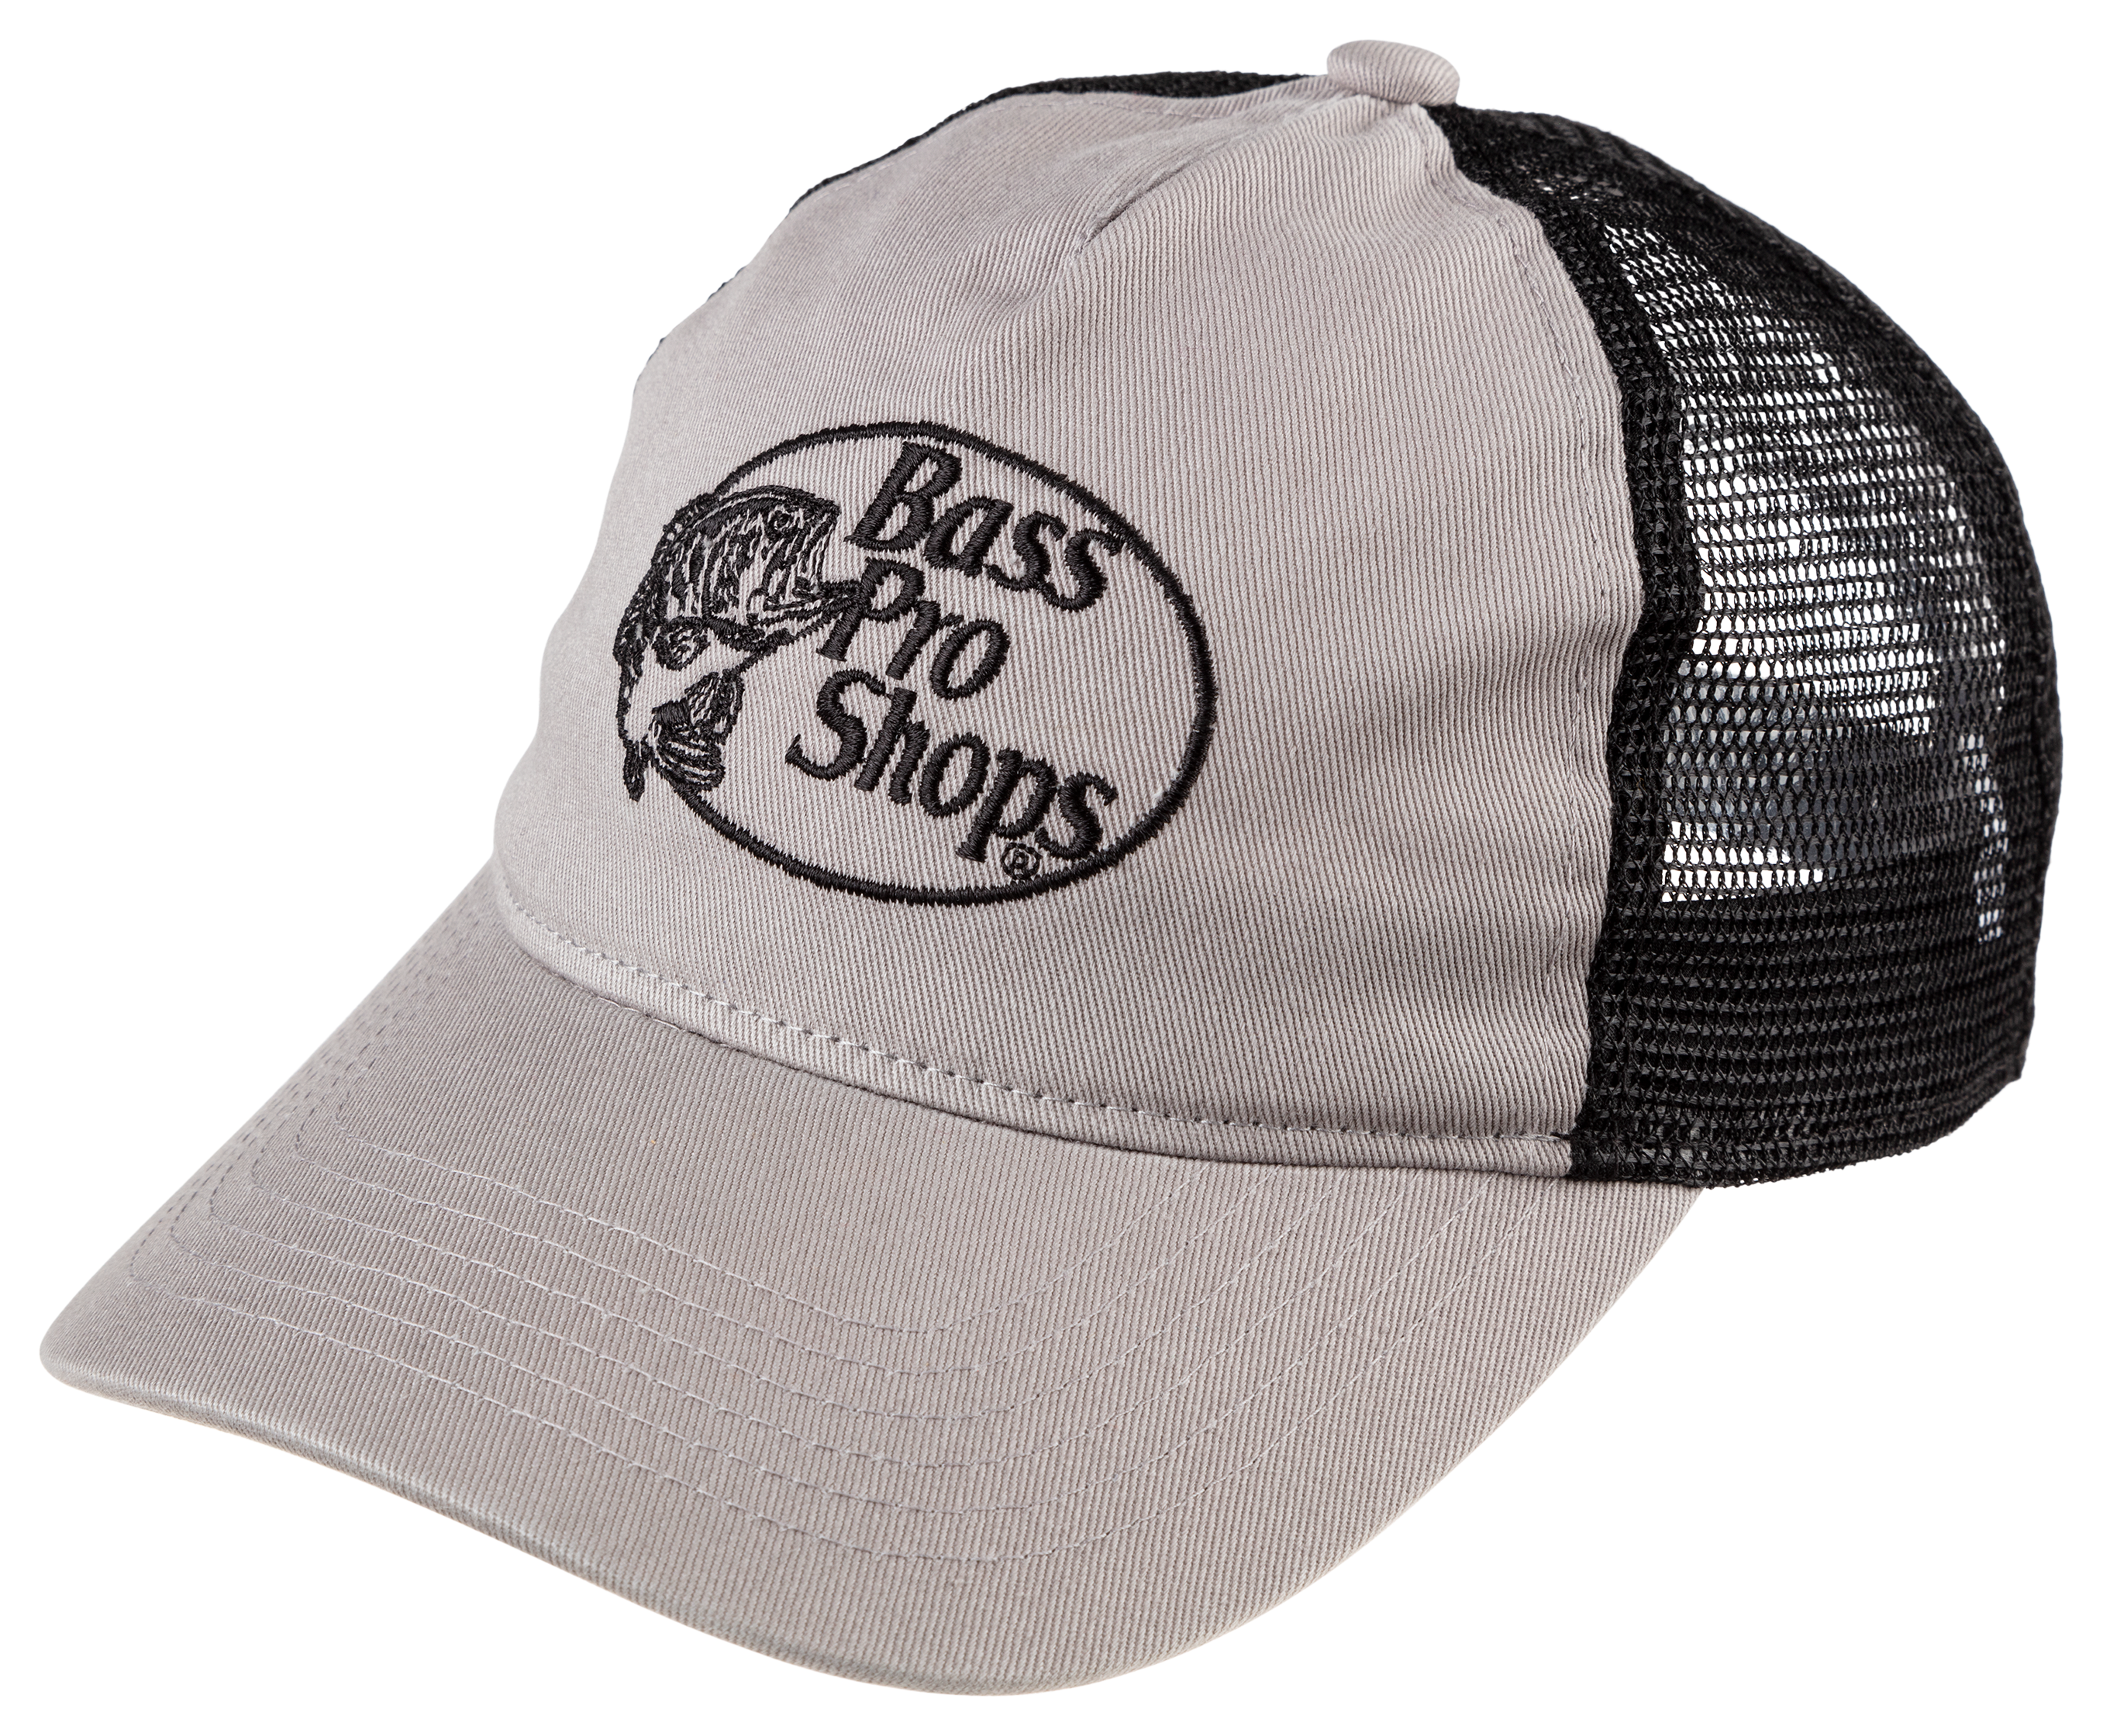 Bass Pro Shops Embroidered Logo Mesh-Back Cap for Kids - Lavender